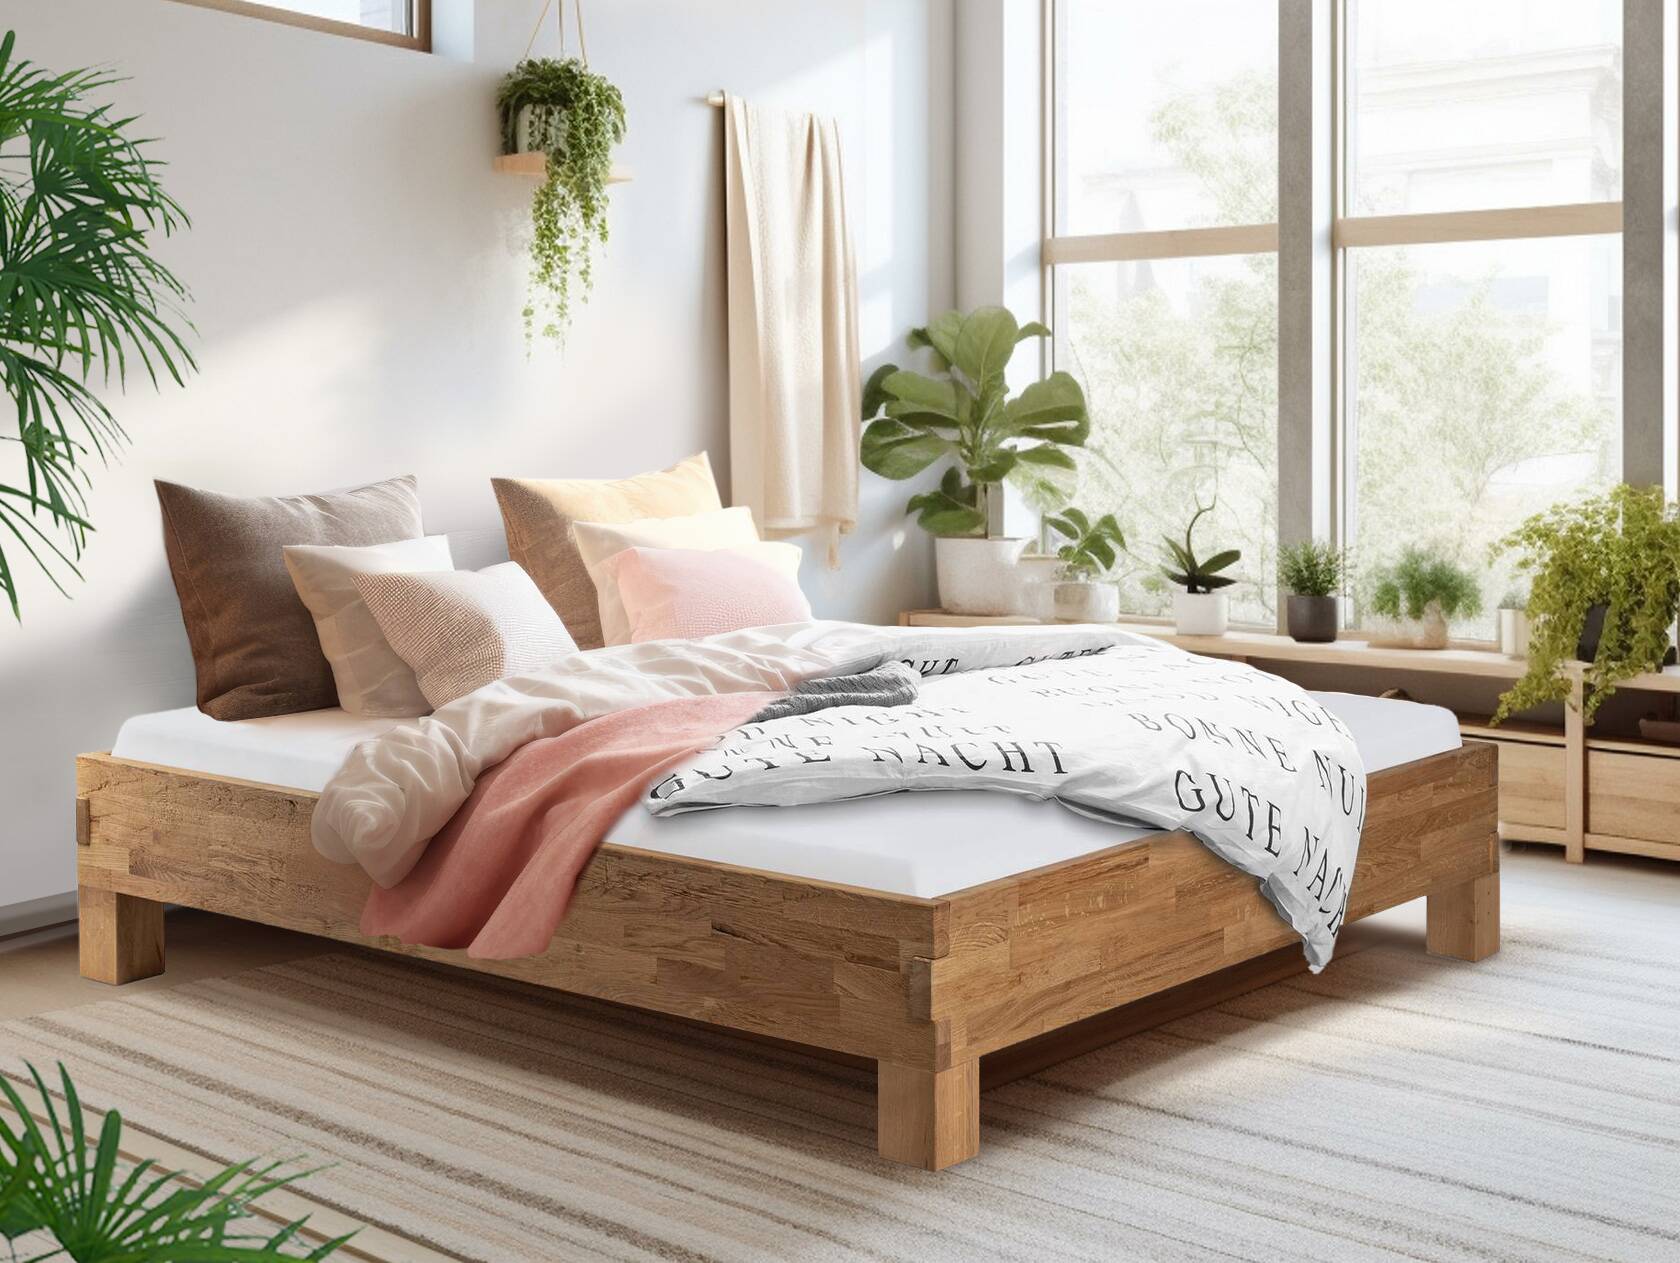 CORDINO 4-Fuß-Bett aus Eiche ohne Kopfteil, Material Massivholz 160 x 220 cm | Eiche unbehandelt | gehackt